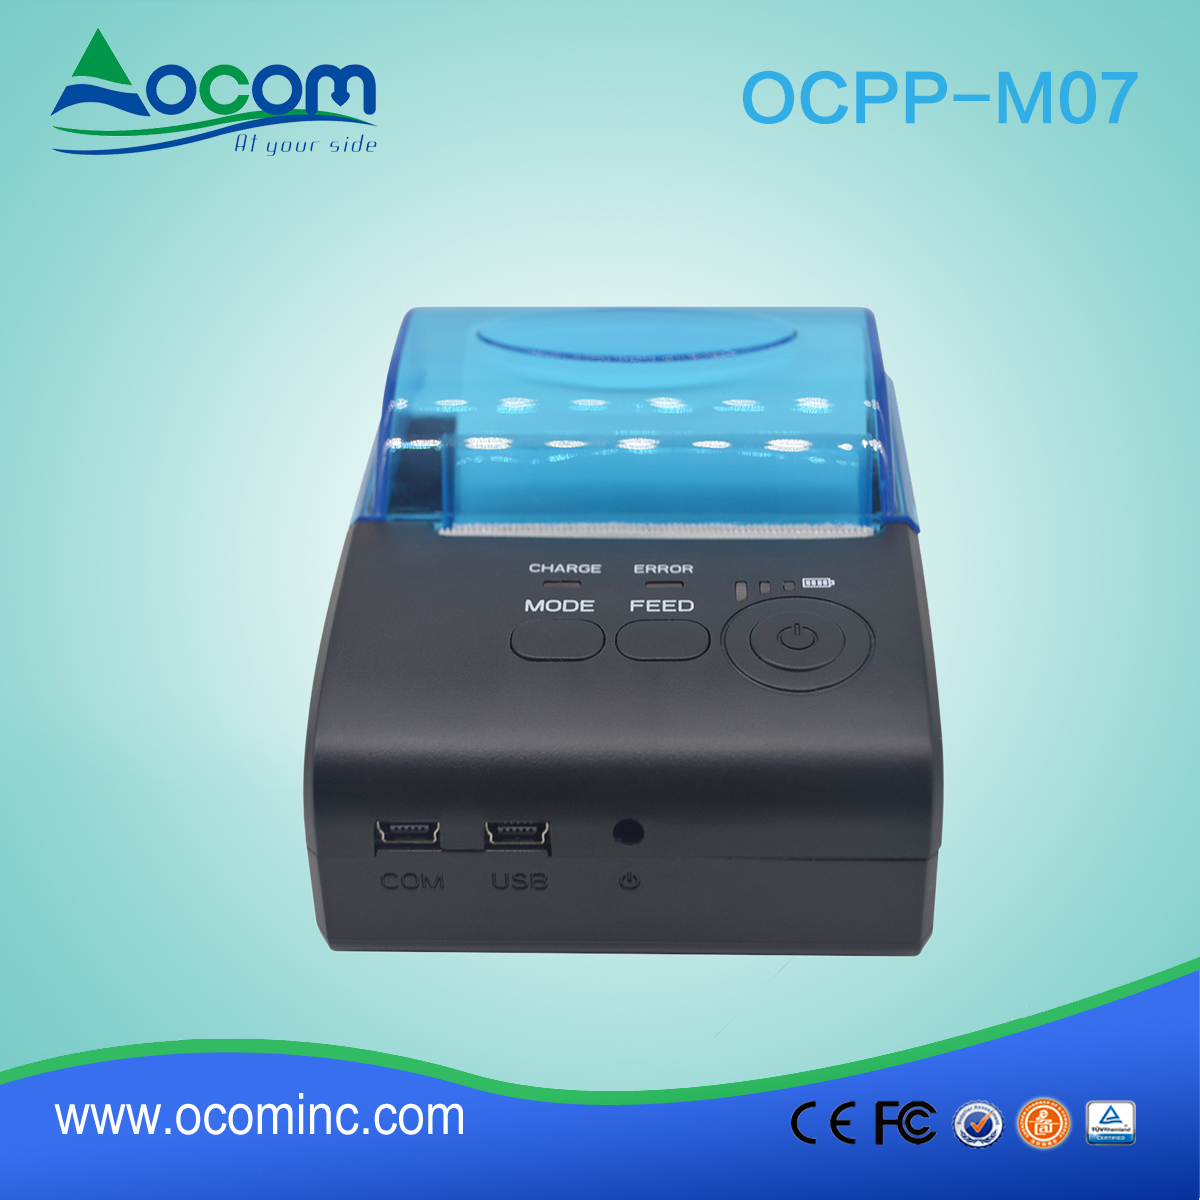 M07-OCPP usb sem fio bluetooth térmica impressora móvel para smartphone